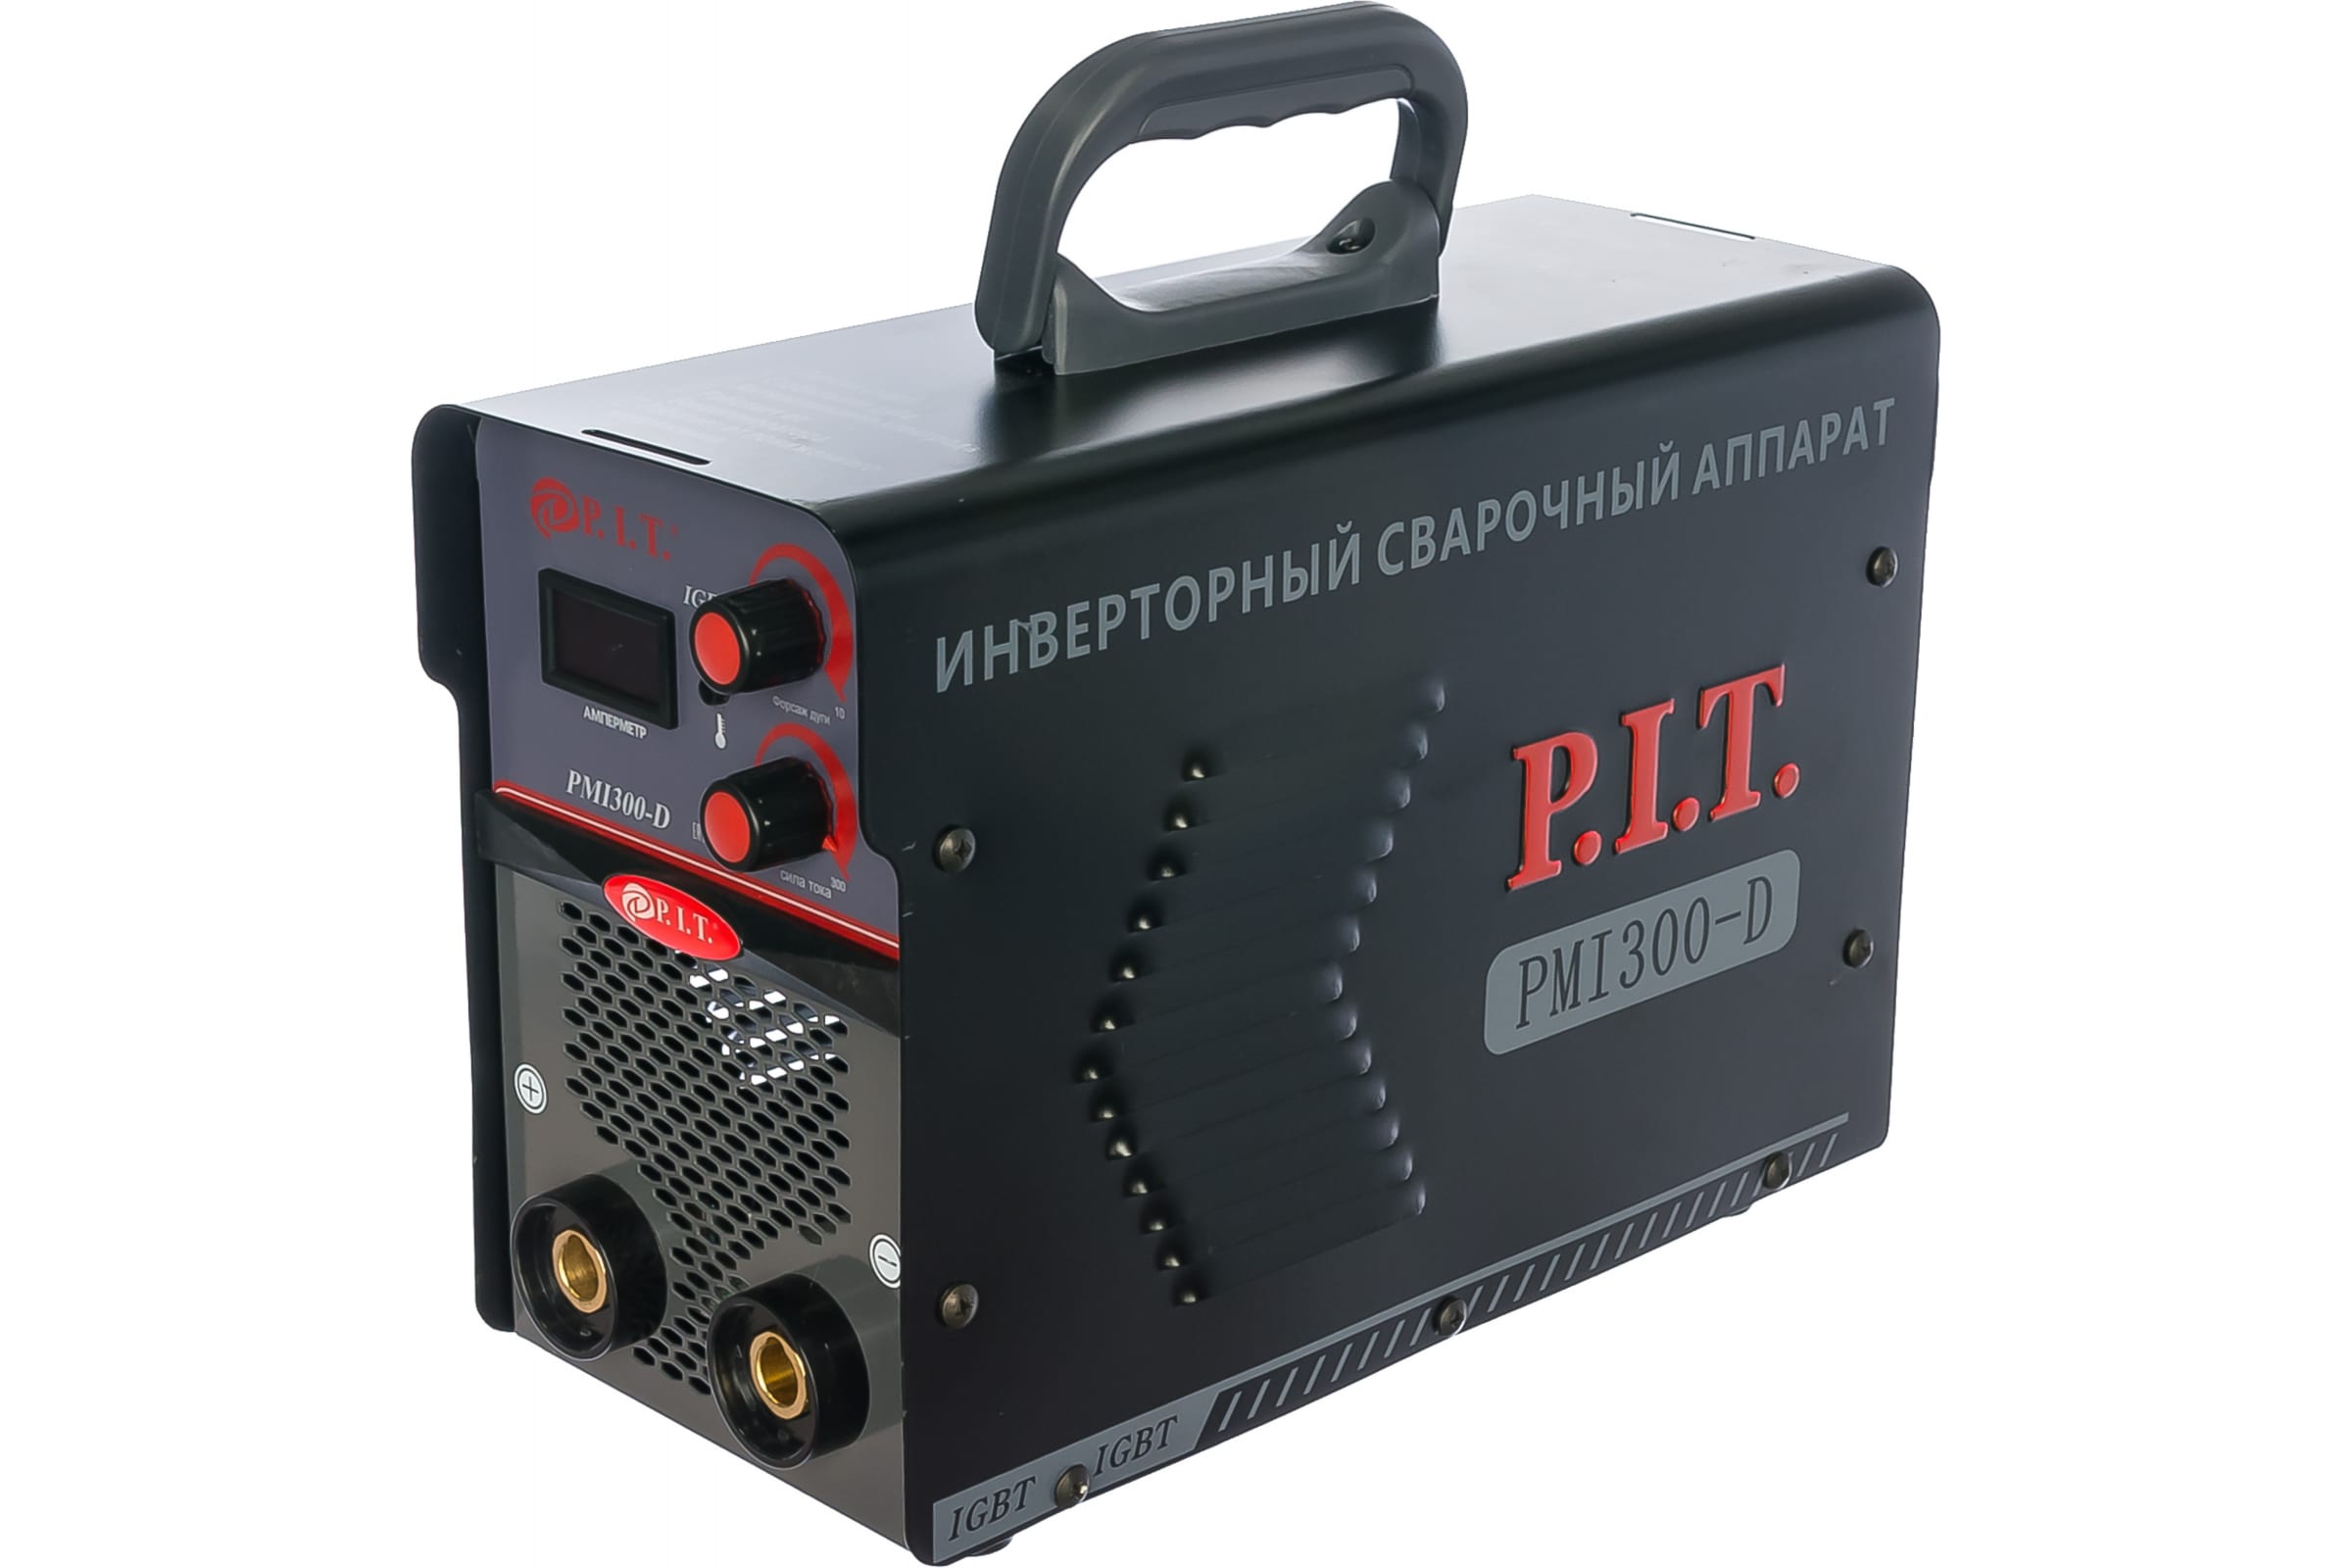 Сварочный инвертор PMI300-D IGBT  P.I.T.(300 А,ПВ-60,1,6-5 мм,от пониж.170В, 5.2кВт,гор.ст